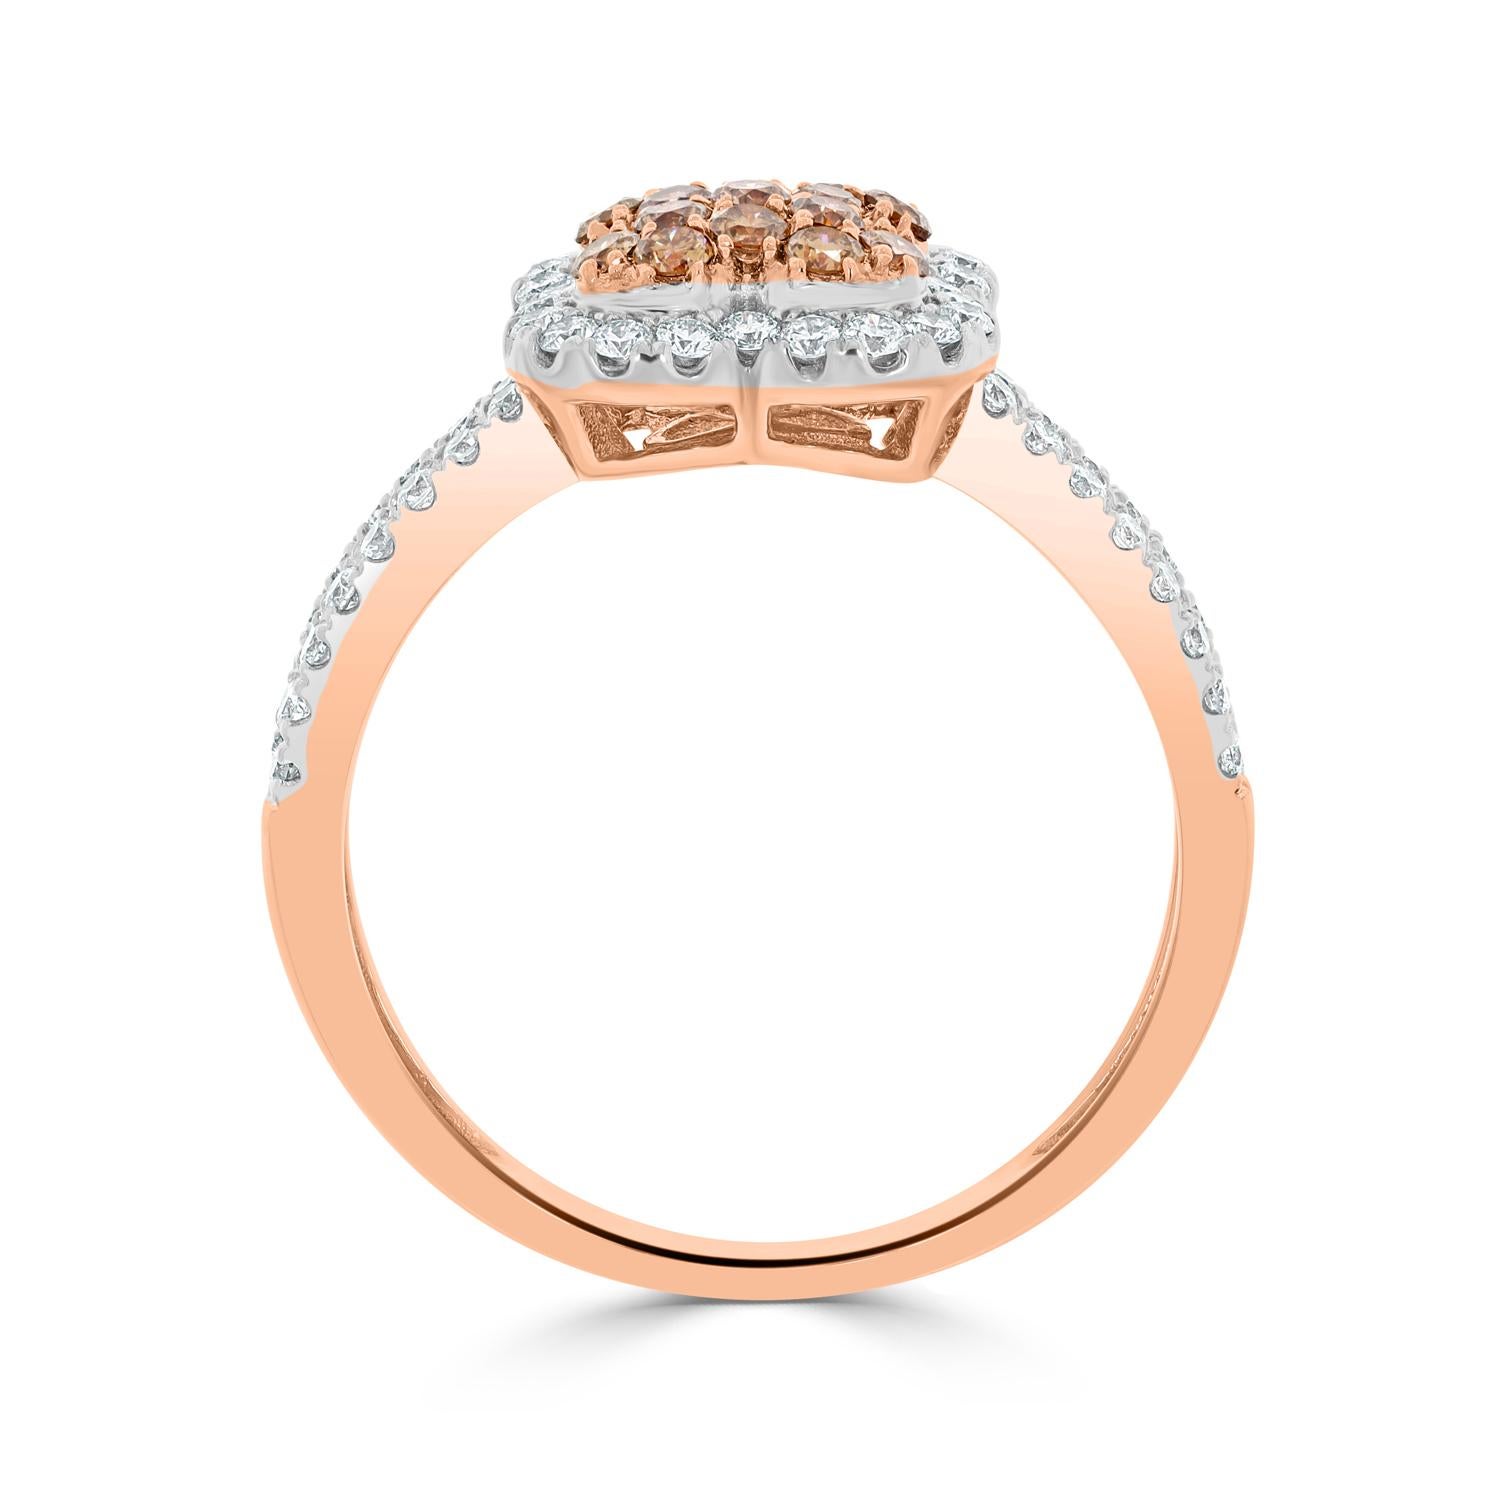 Dieser üppige Ring verleiht Ihrem gesamten Erscheinungsbild strahlende Schönheit und Eleganz. Dieser aus 14-karätigem Roségold gefertigte und mit Diamanten im Rundschliff verzierte Ring schafft die perfekte Balance zwischen Raffinesse und